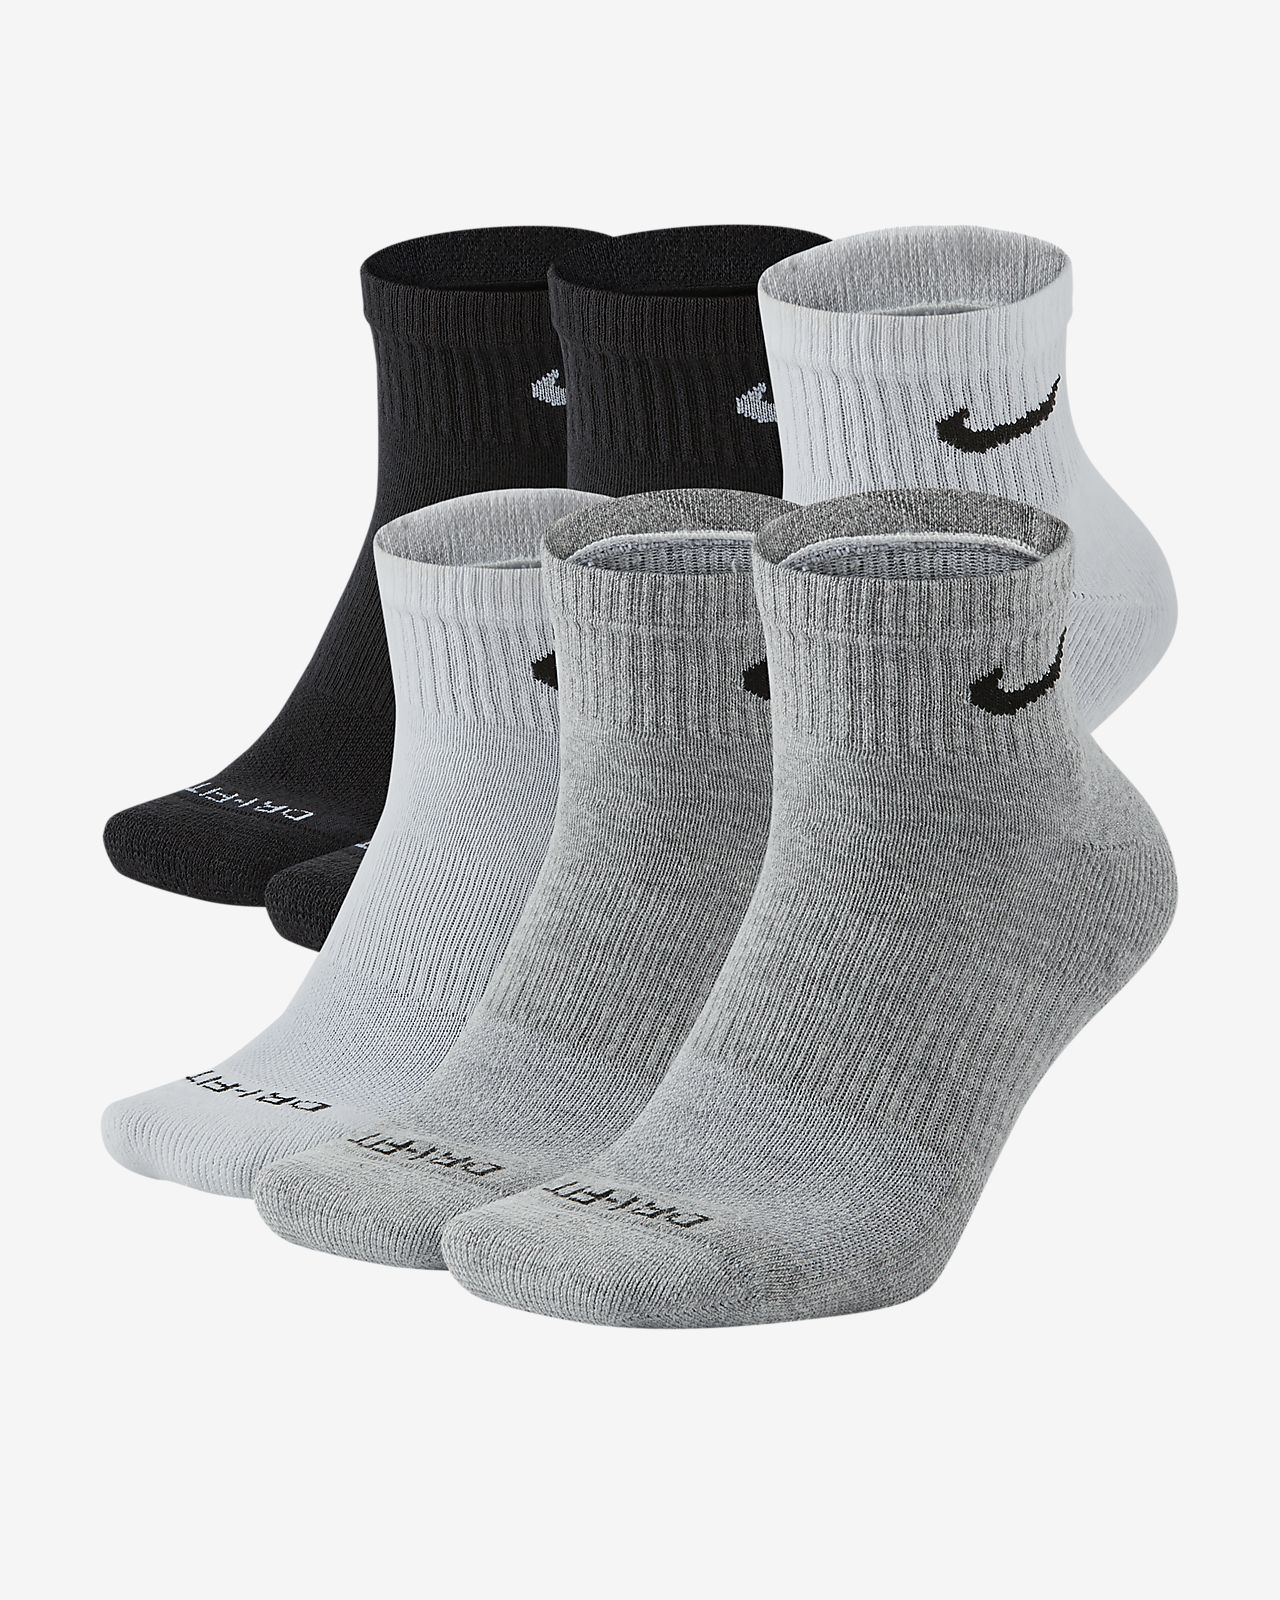 Nike Everyday Plus Cushion Training Ankle Socks (6 Pairs).